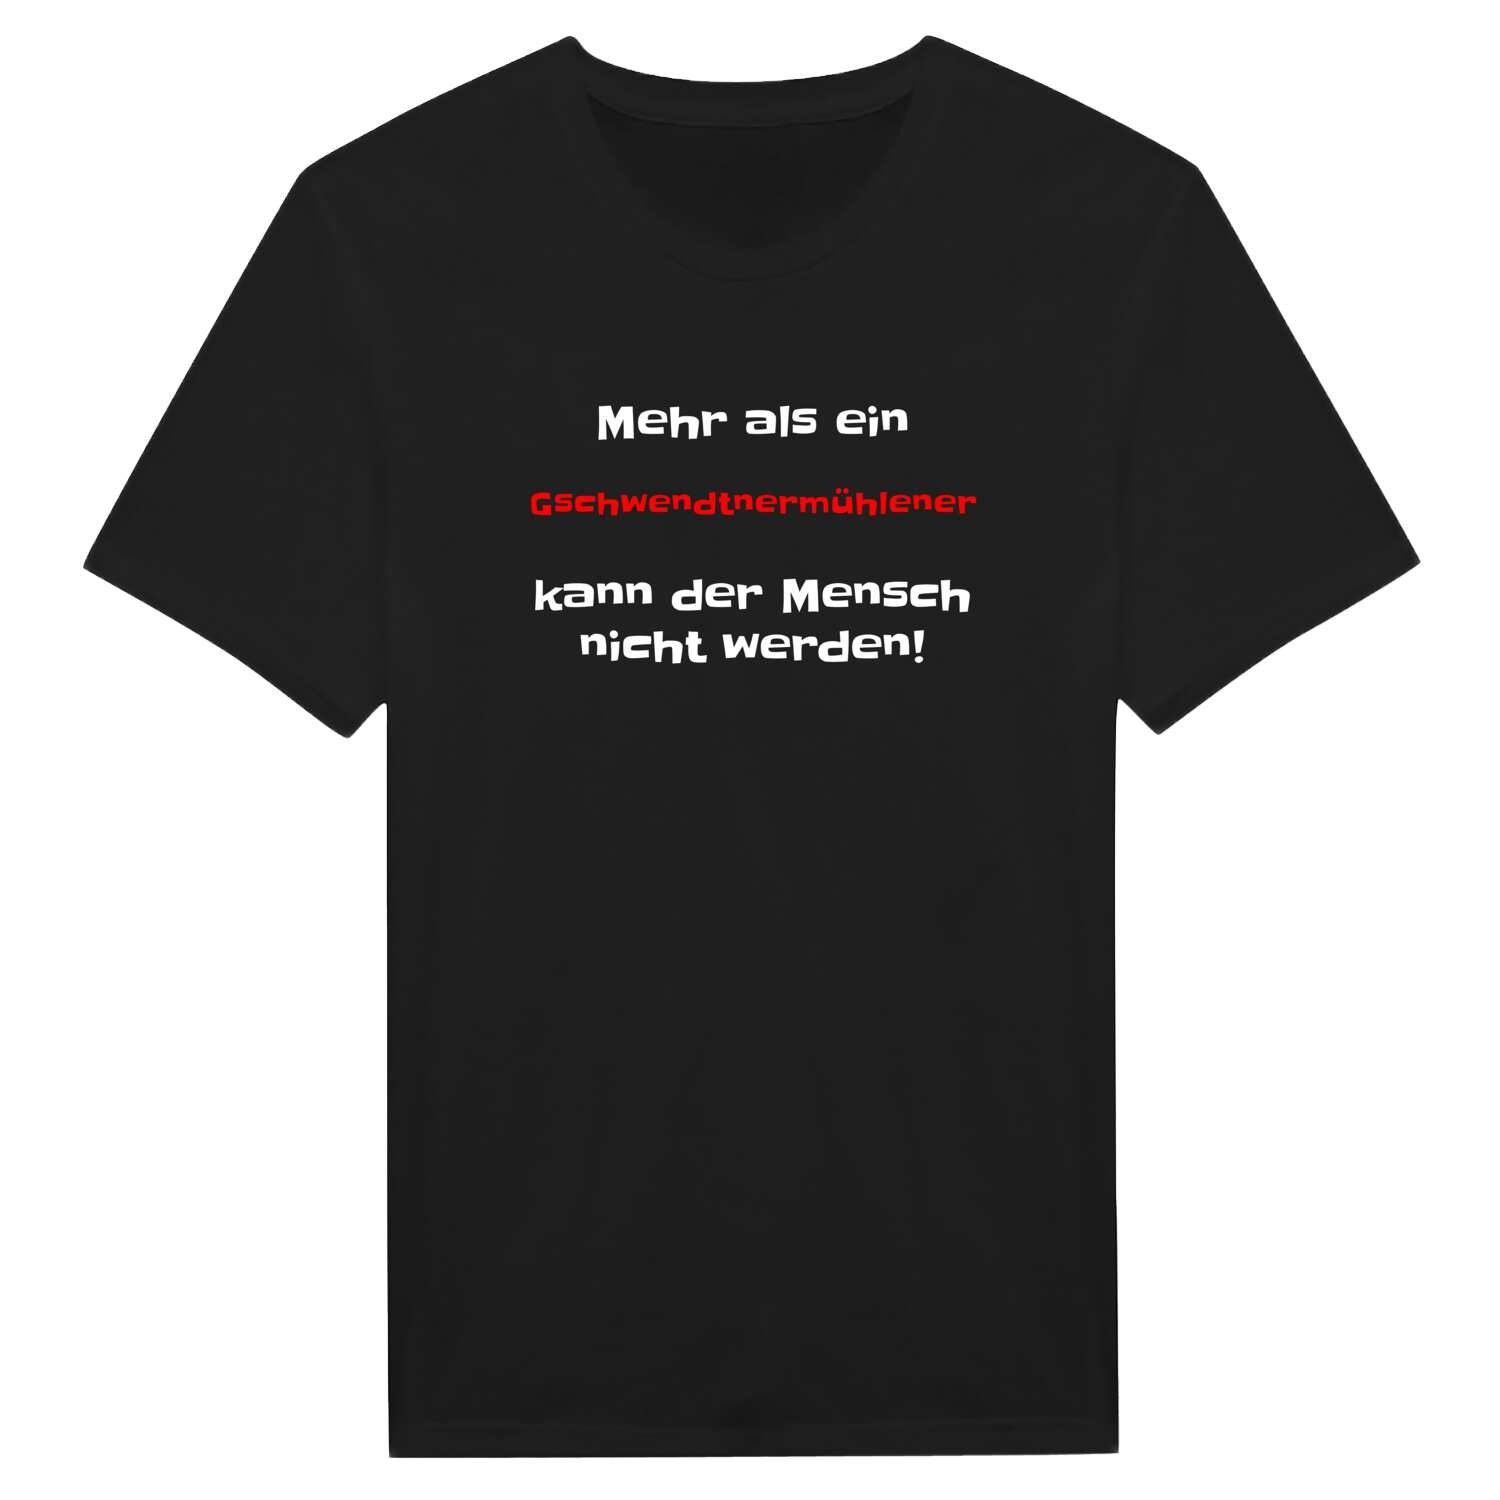 Gschwendtnermühle T-Shirt »Mehr als ein«